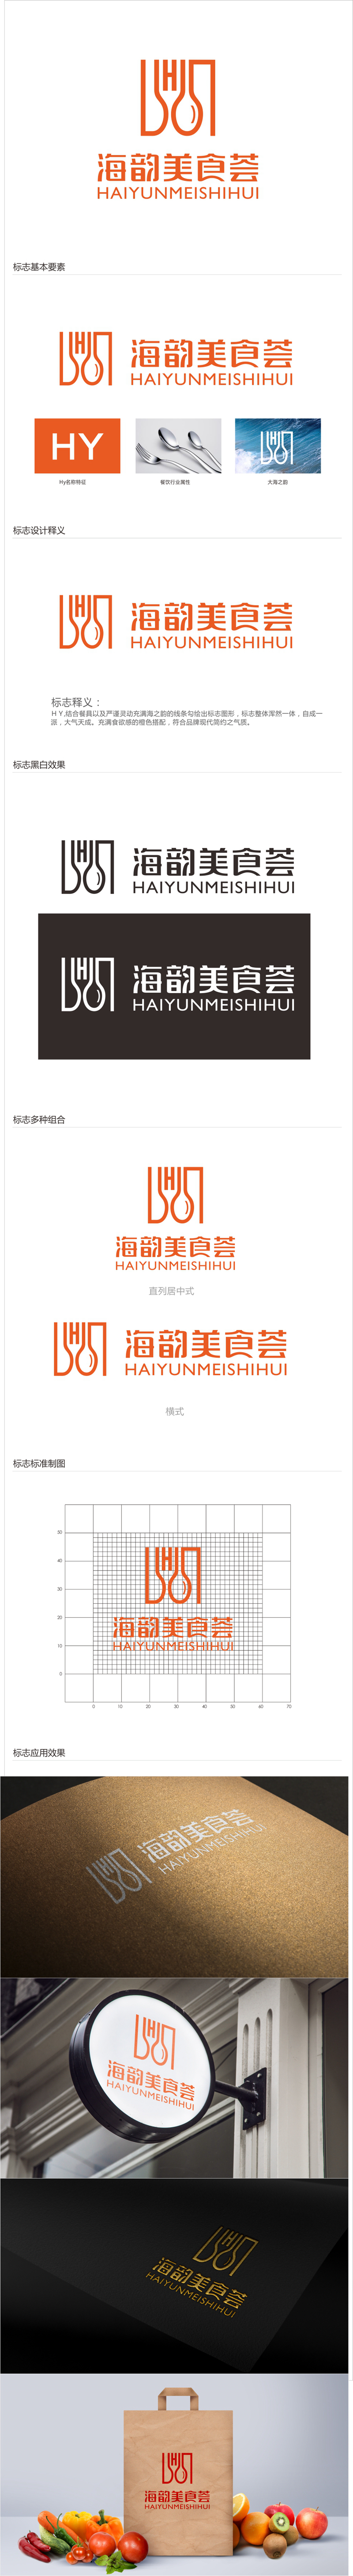 唐国强的海韵美食荟logo设计